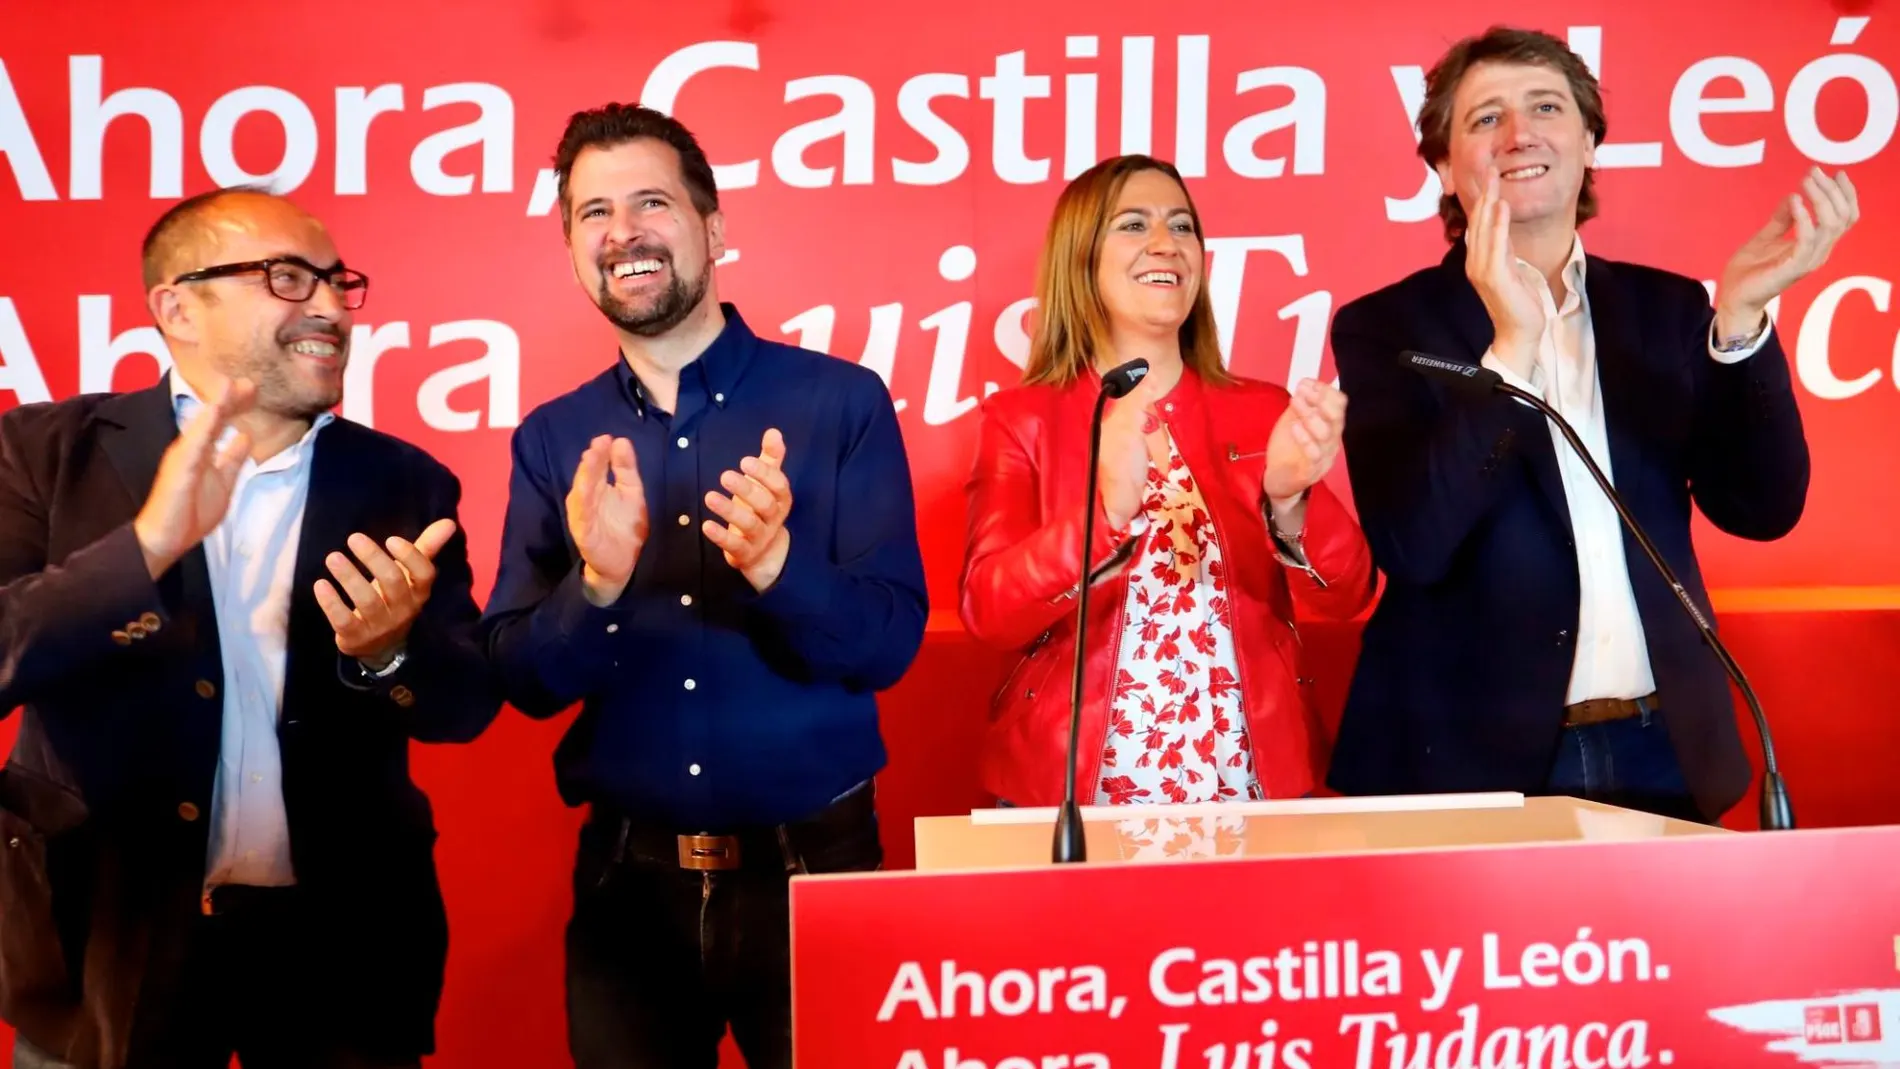 Luis Rey, Luis Tudanca, Virgina Barcones y Carlos Martínez saludan al centenar de simpatizantes que siguieron el acto en Soria